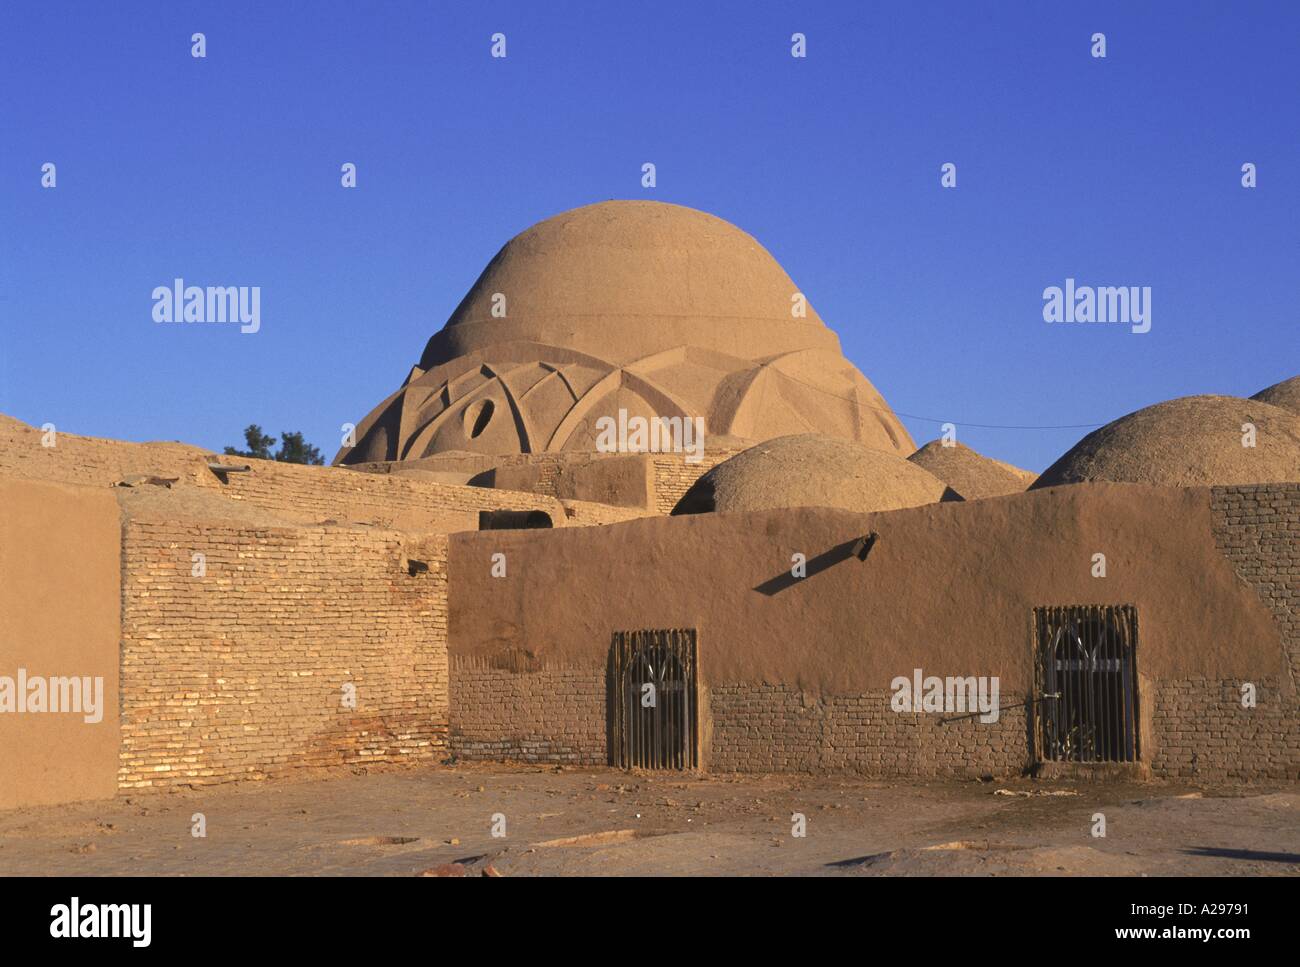 Brique de boue safavide dôme du bazar Vakil construit en Iran Kerman 18ème Moyen-orient C Rennie Banque D'Images